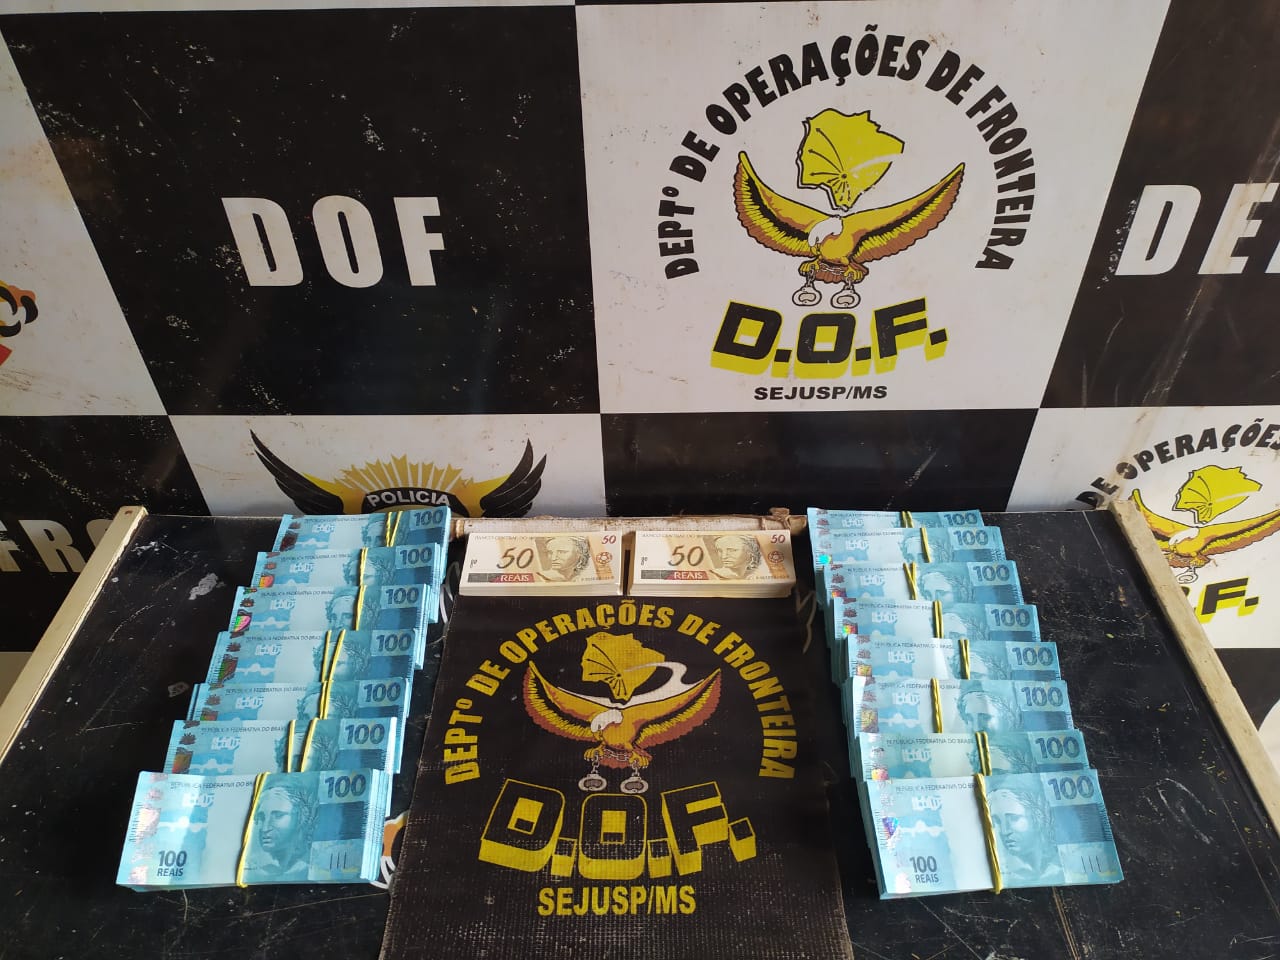 Passageira de ônibus foi presa pelo DOF com mais de 160 mil reais em notas falsas na região de Dourados